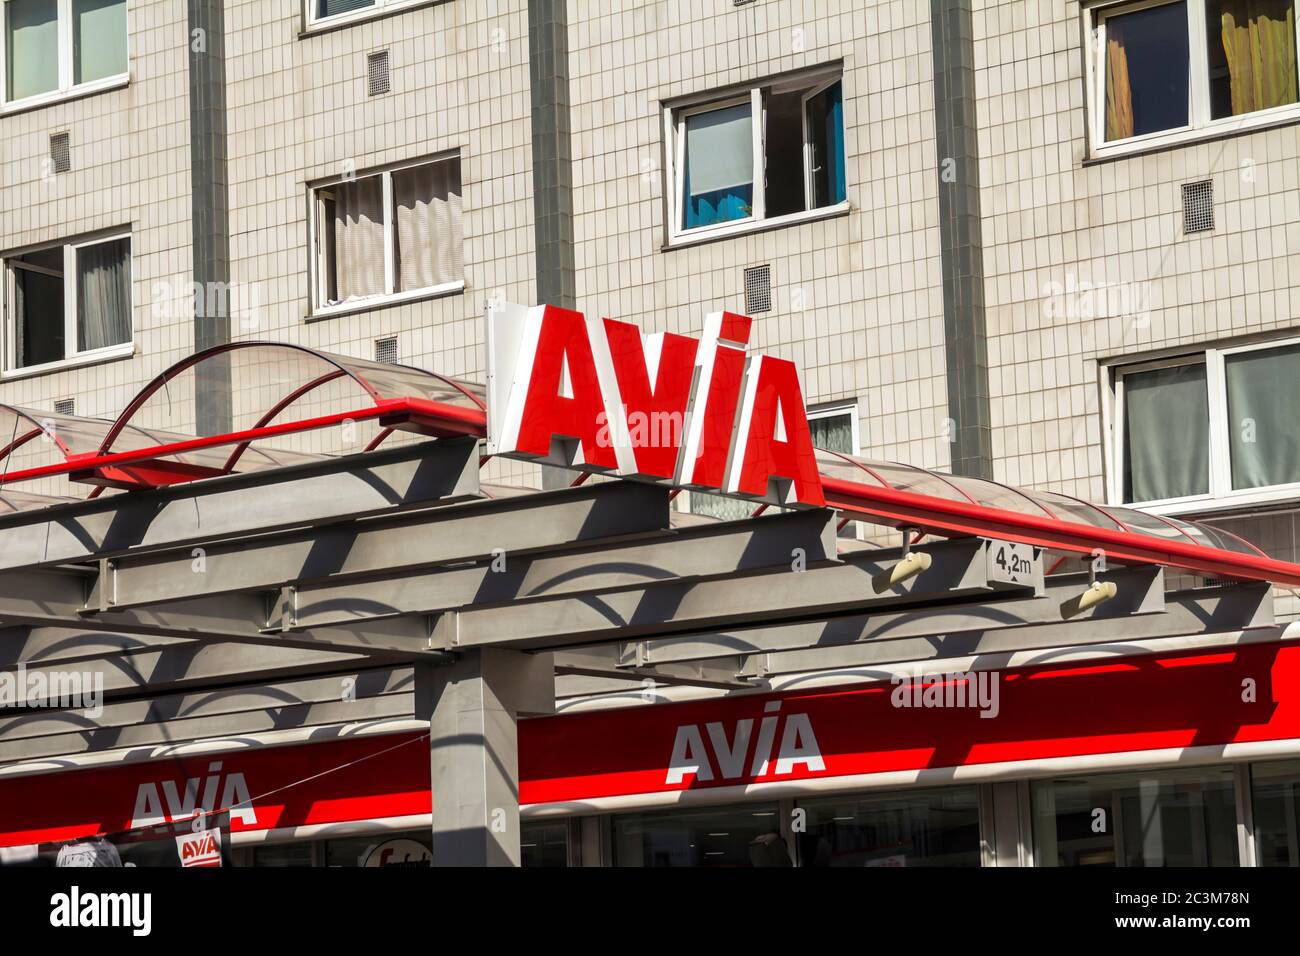 Nurnberg, Allemagne, août 11,2019 : panneau Avia à la station-service contre le mur. Avec environ 3,000 stations de remplissage Avia est le groupe le plus largement utilisé independide Banque D'Images